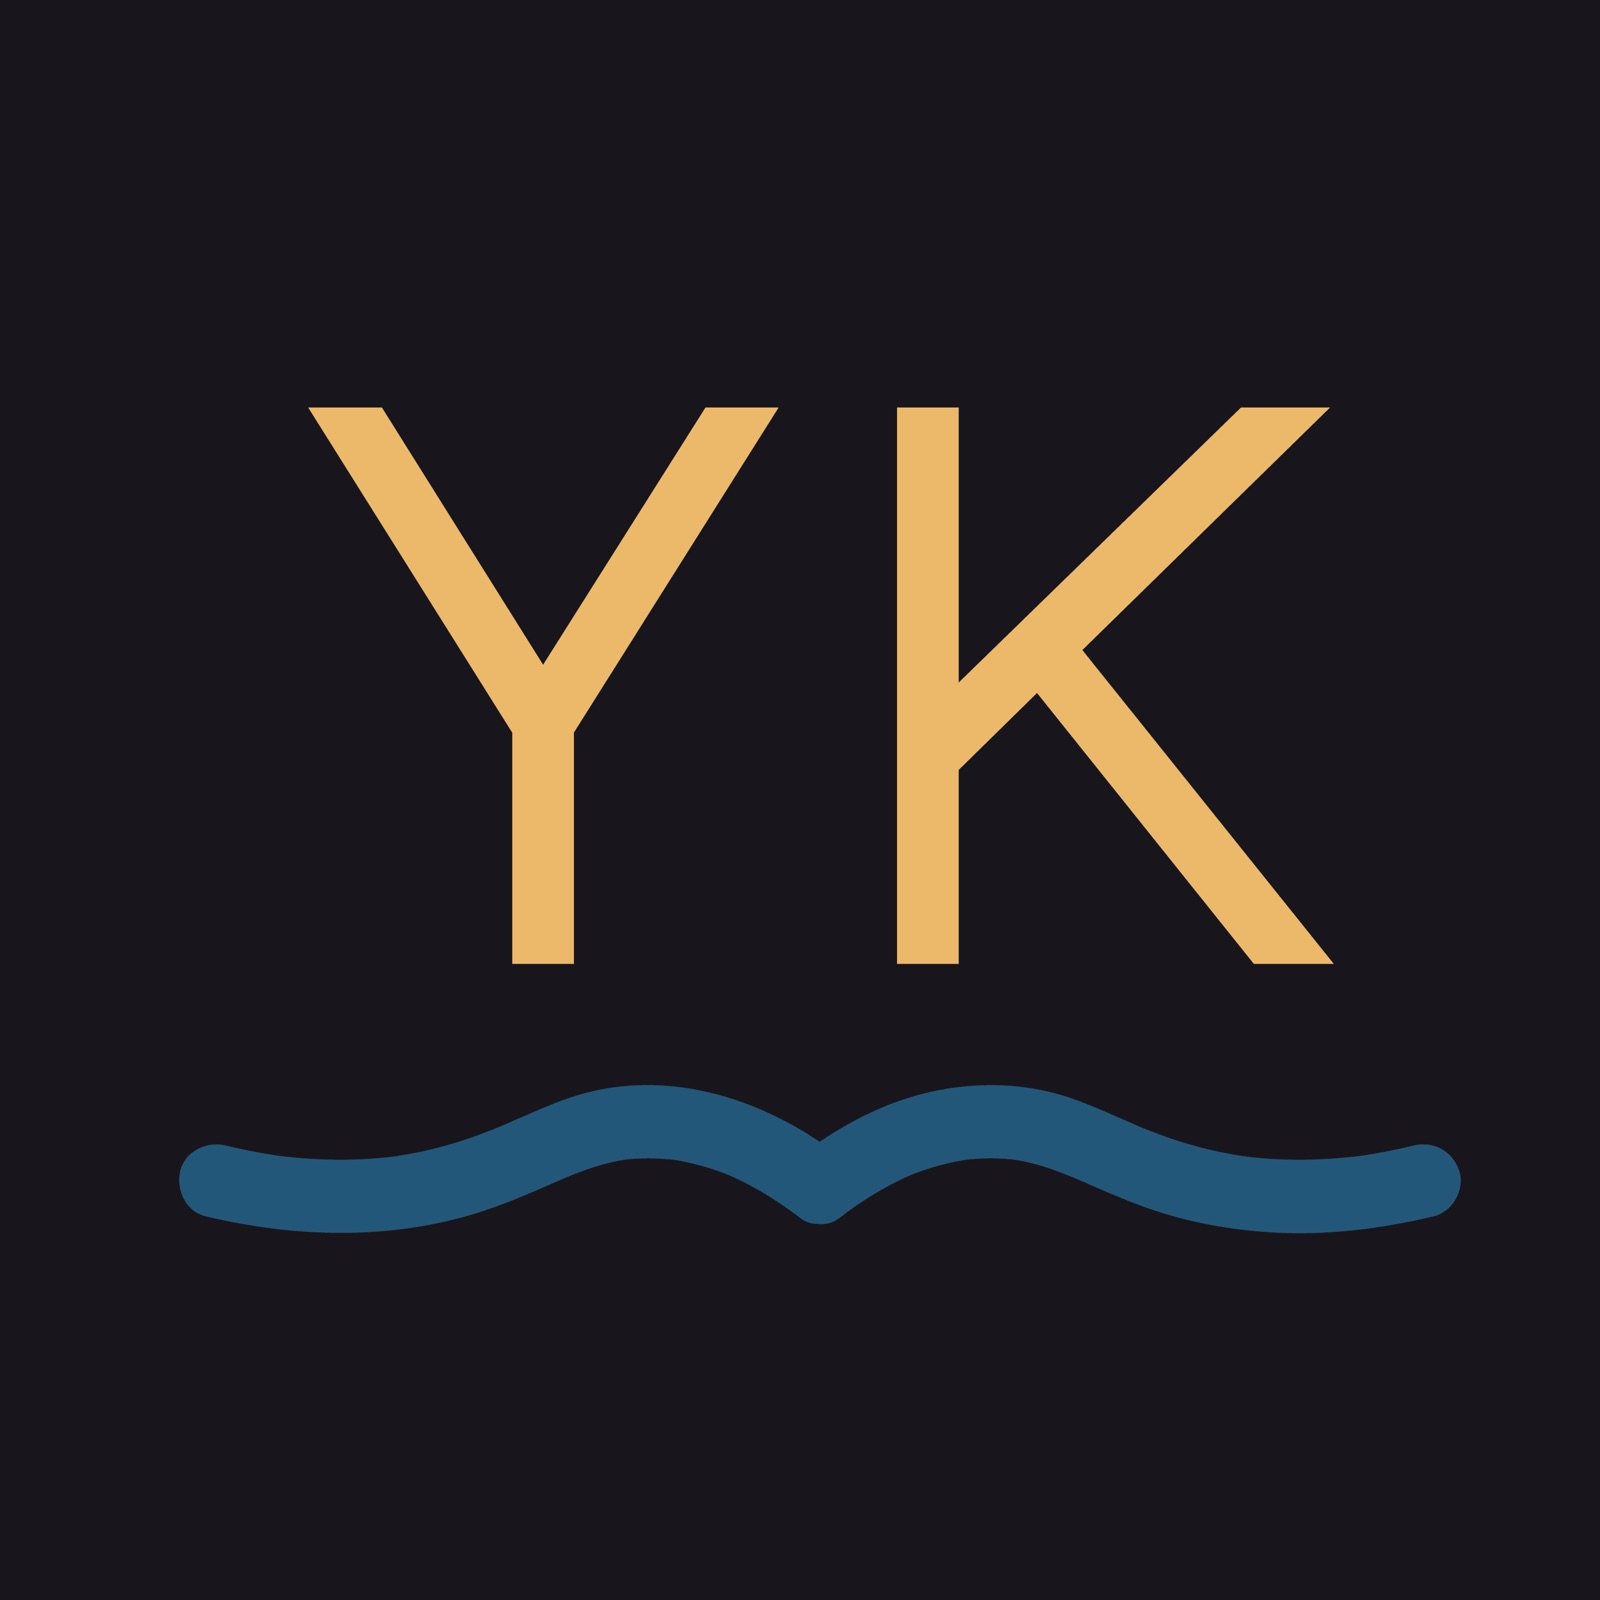 Yidkit logo